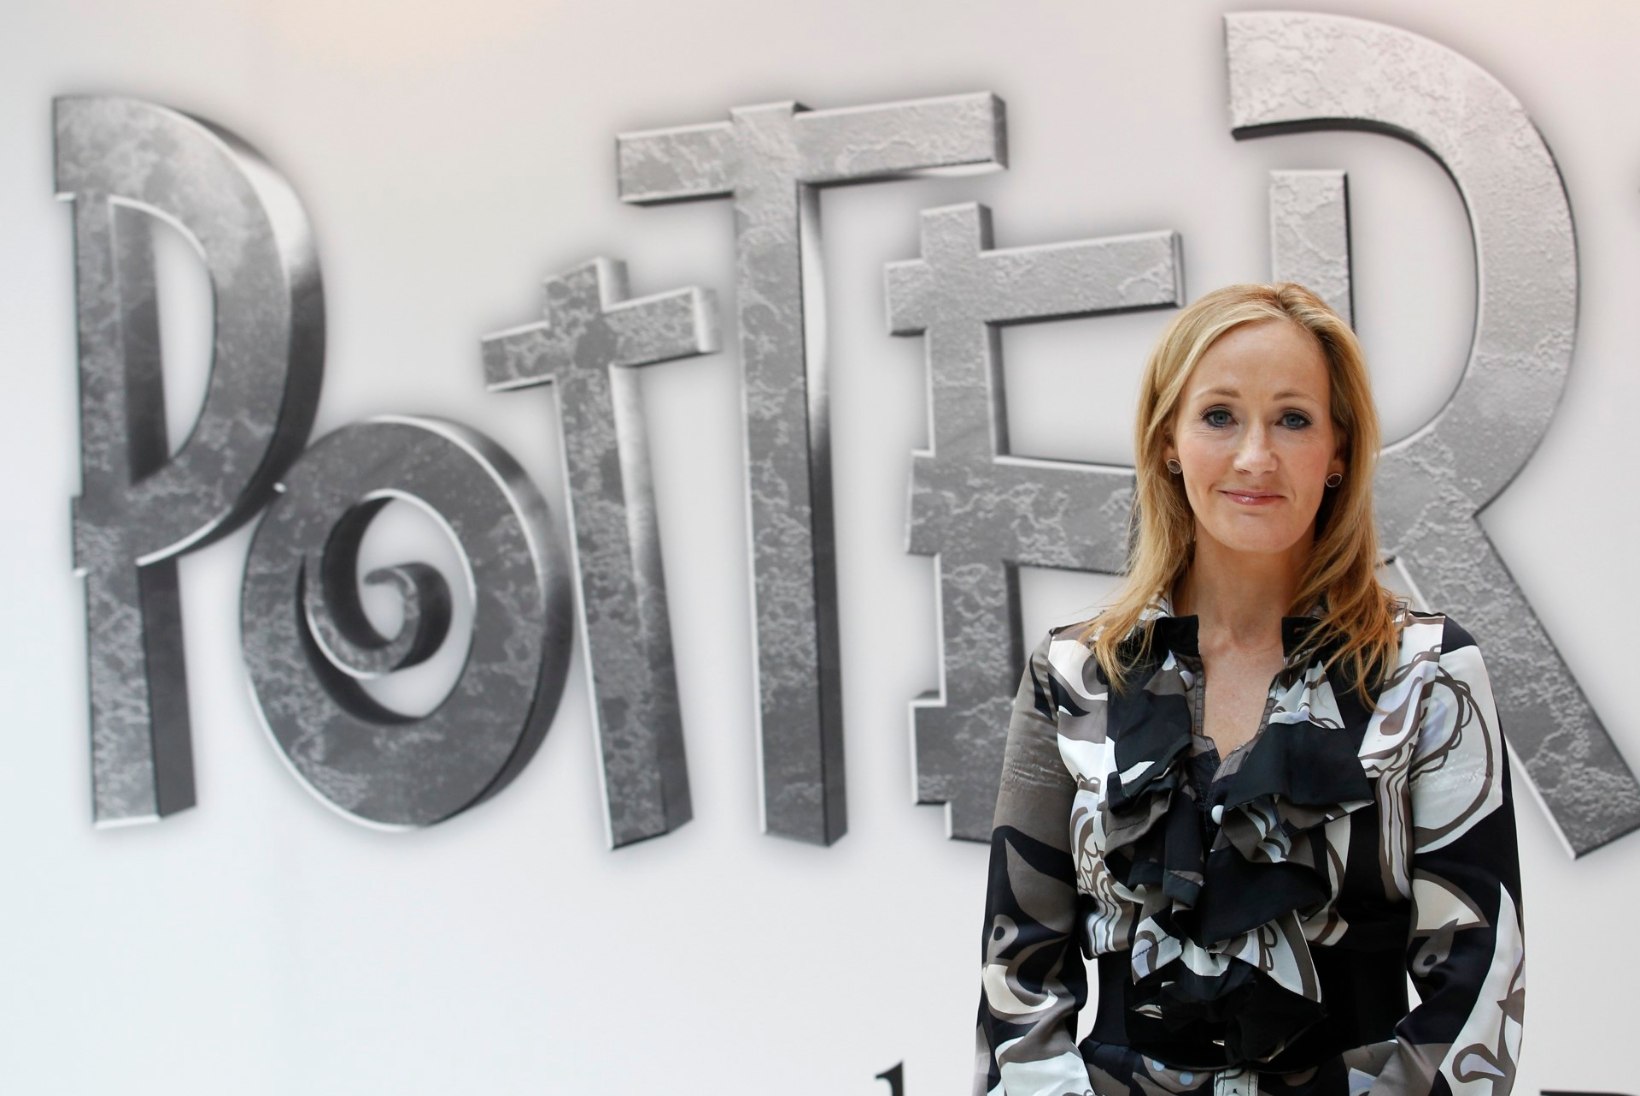 J.K. Rowling avalikustas oma lemmiktegelase Harry Potterist